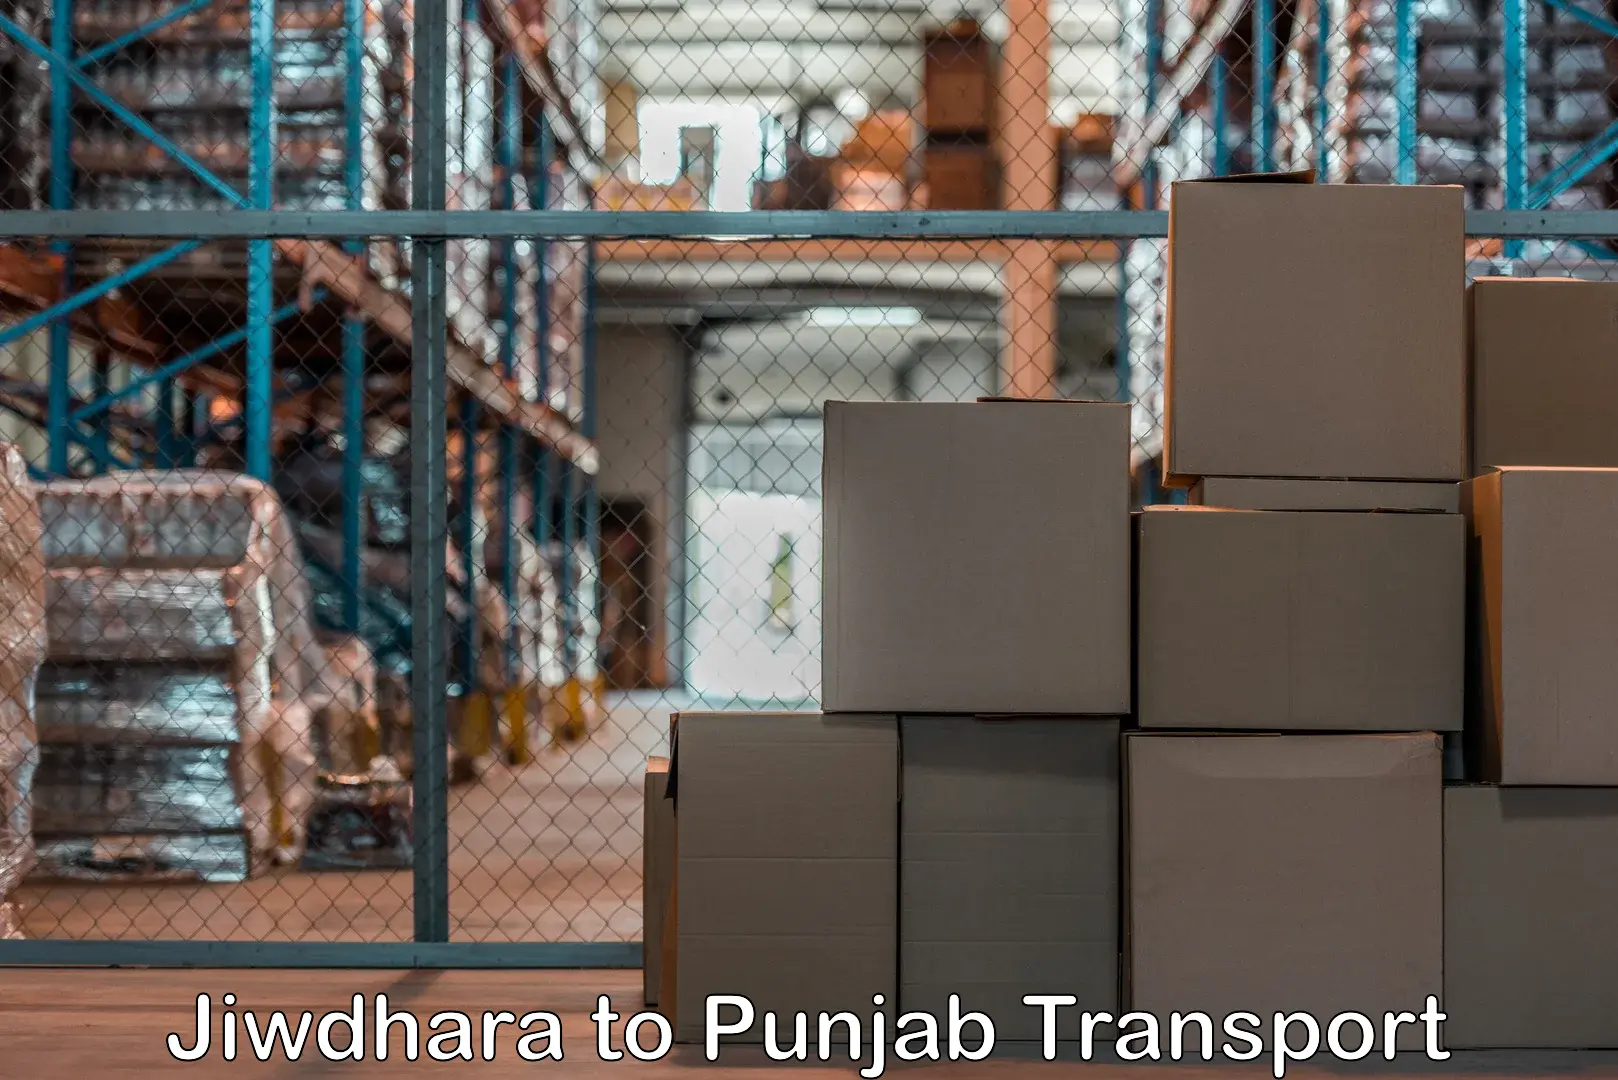 Transport shared services Jiwdhara to Zirakpur